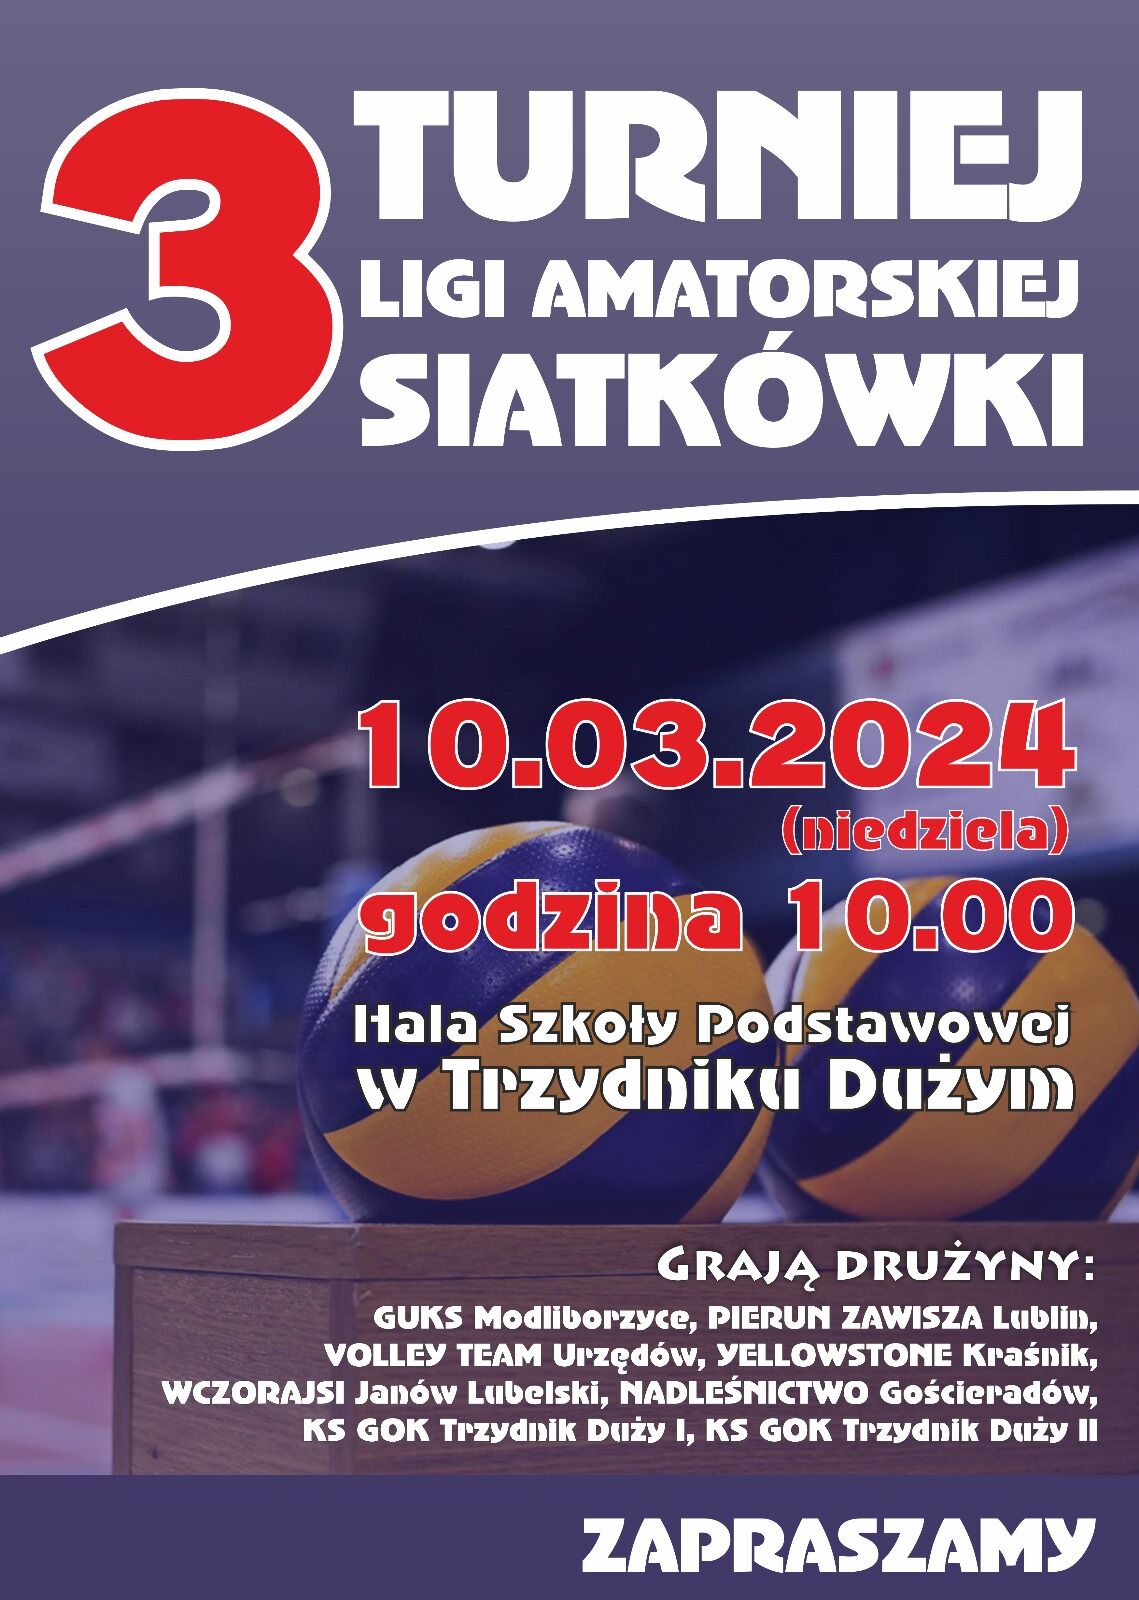 Plakat promujący turniej siatkówki z czerwono-niebieskimi elementami, zawierający datę, miejsce i listę uczestniczących drużyn, z hasłem "Zapraszamy" na dole.